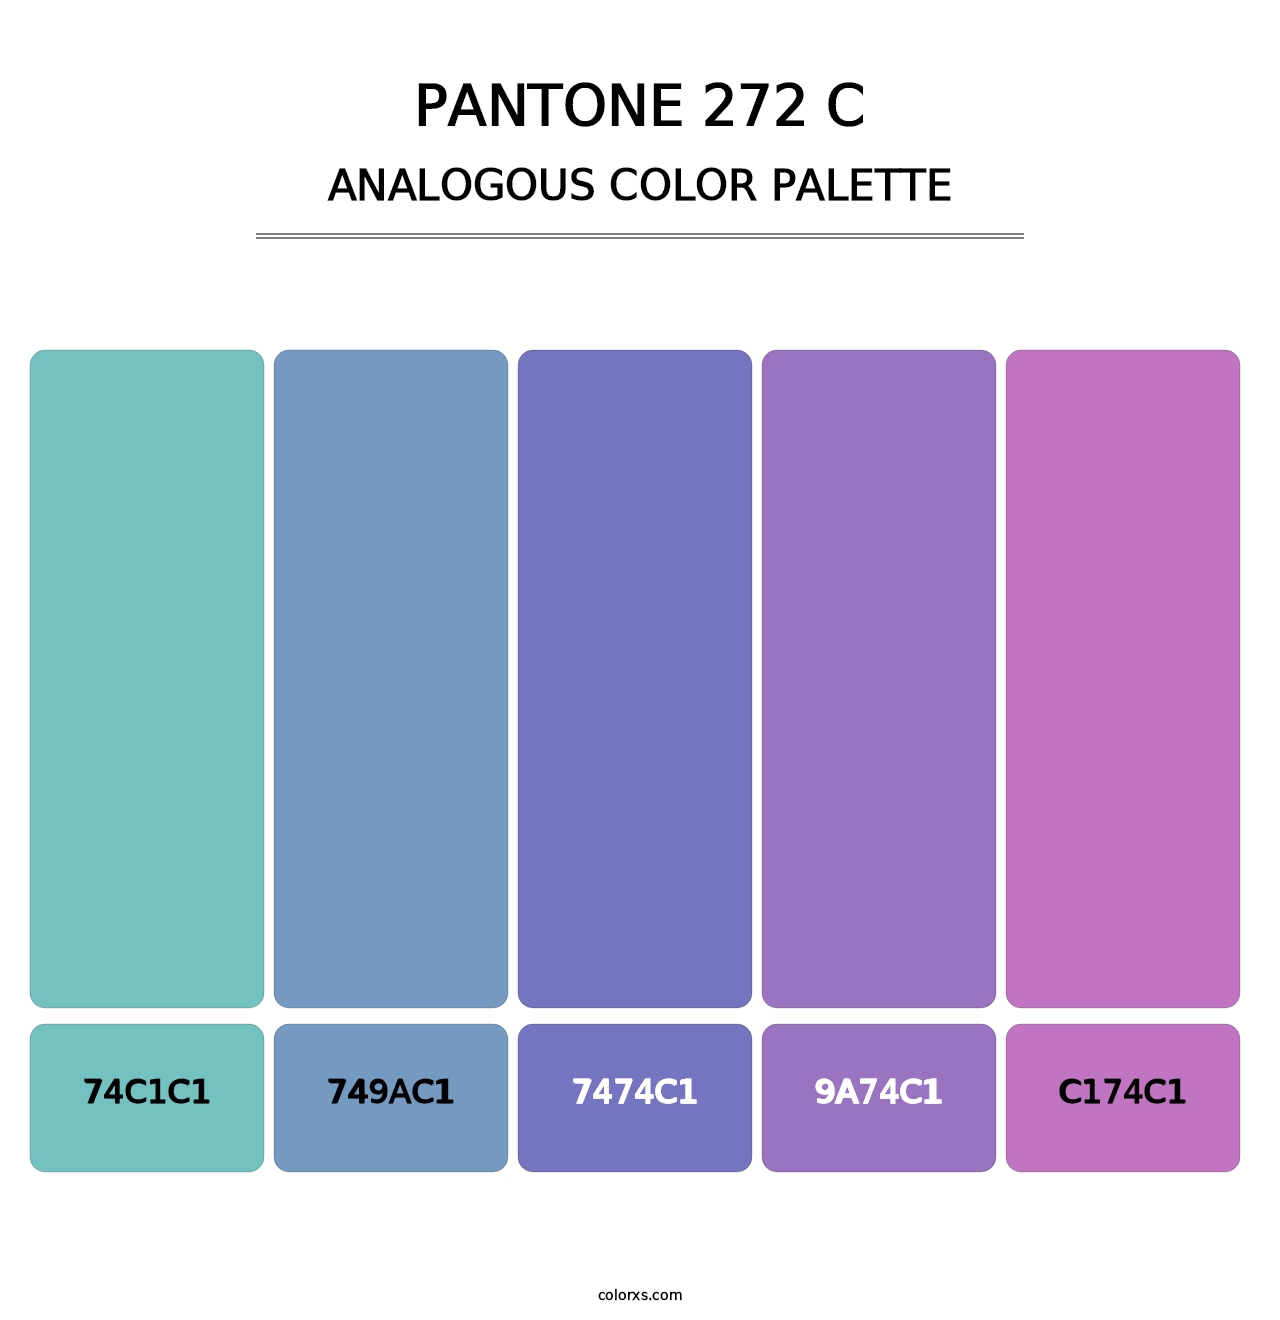 PANTONE 272 C - Analogous Color Palette